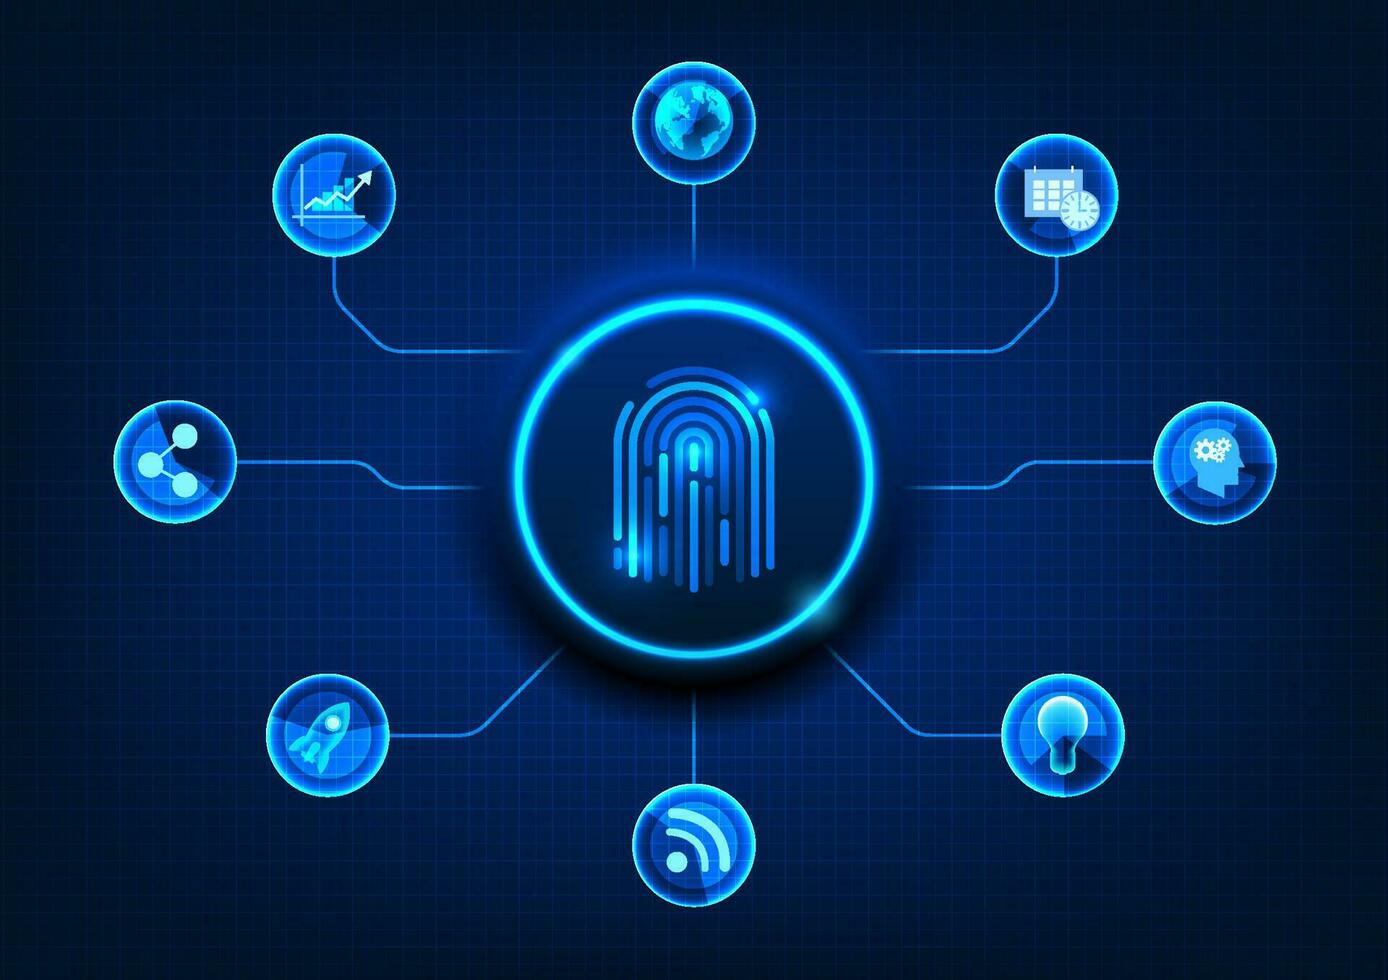 slim technologie achtergrond met vingerafdruk scanner knop gebruikt voor authenticatie naar toegang gevoelig informatie in de internet netwerk. het is een technologie voor beschermen persoonlijk informatie. vector